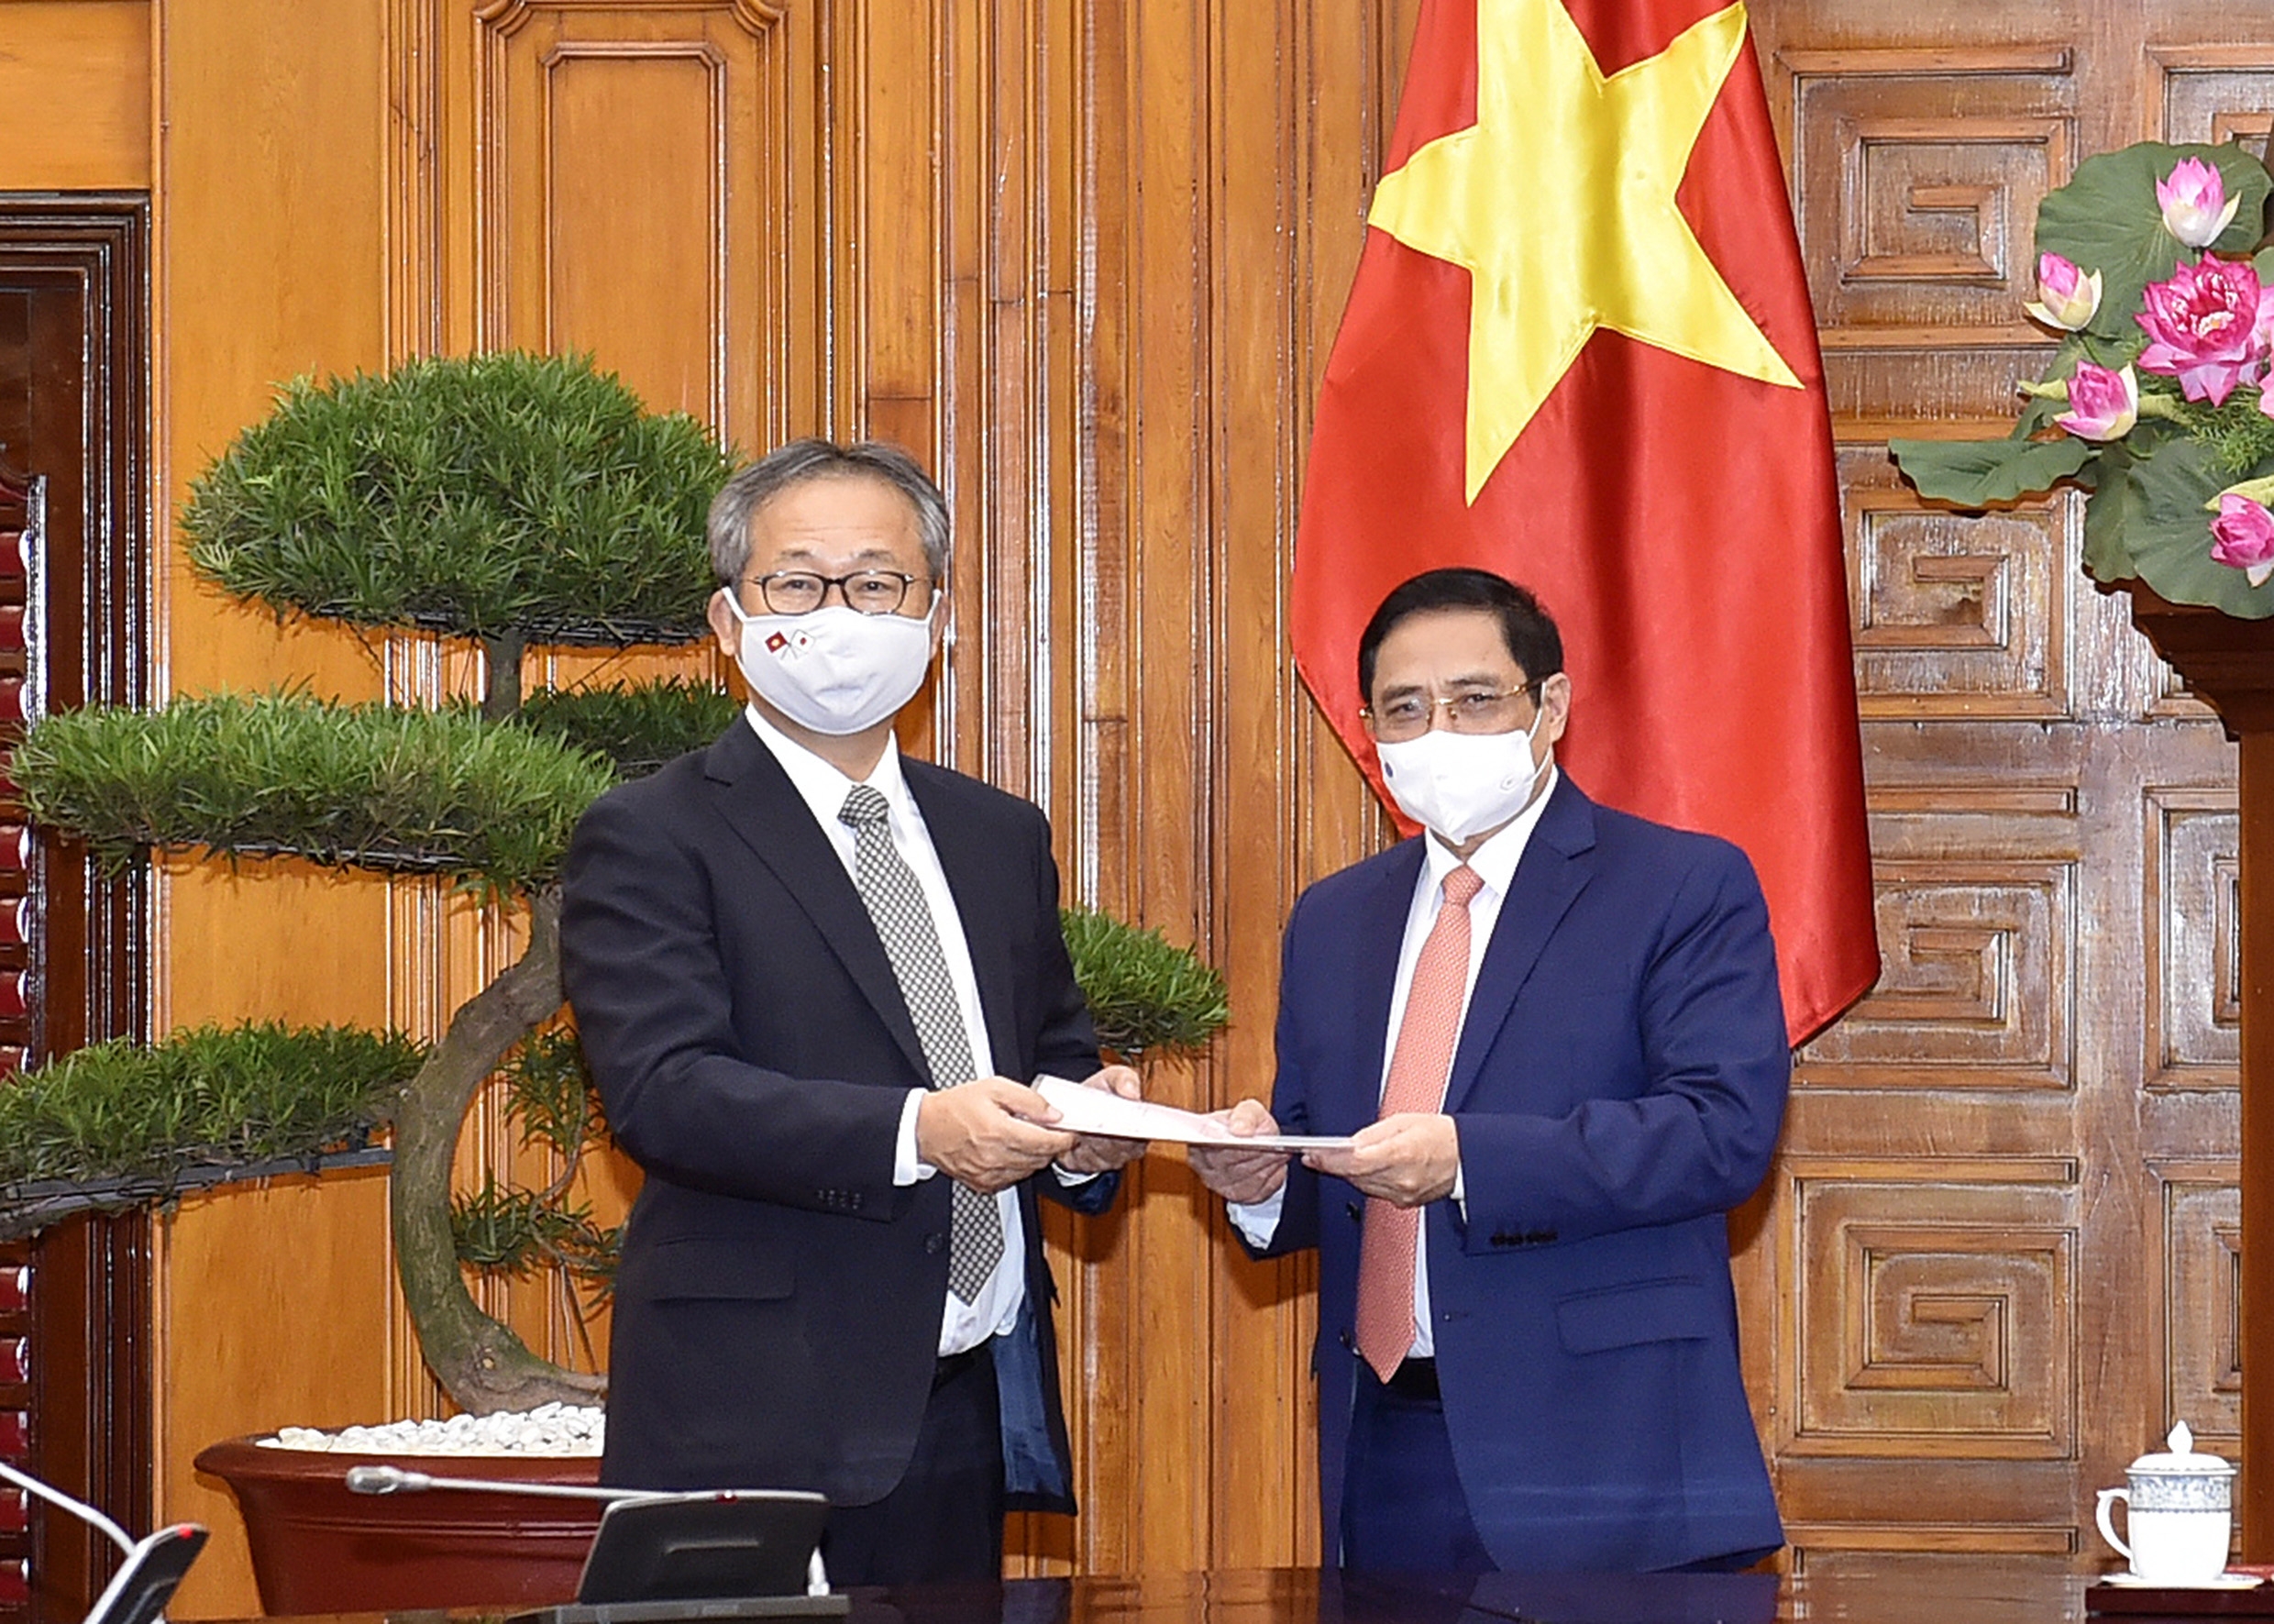 Chính phủ Nhật Bản hỗ trợ Việt Nam 1 triệu liều vắc xin để phòng, chống Covid-19